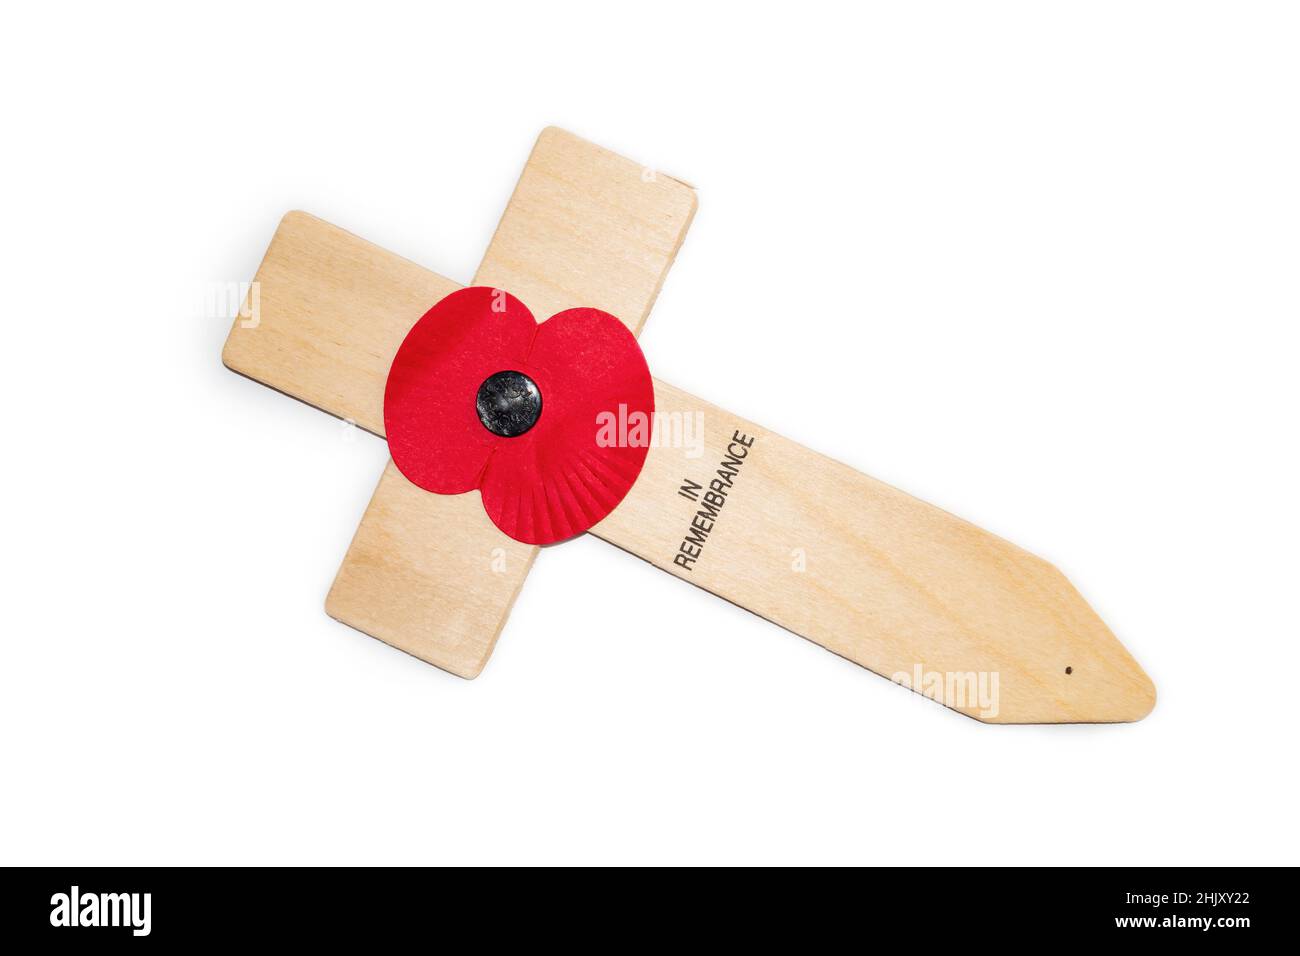 Coquelicot de la Légion royale britannique sur une croix en bois.En mémoire.Mémorial militaire de la première et deux guerres mondiales. Banque D'Images